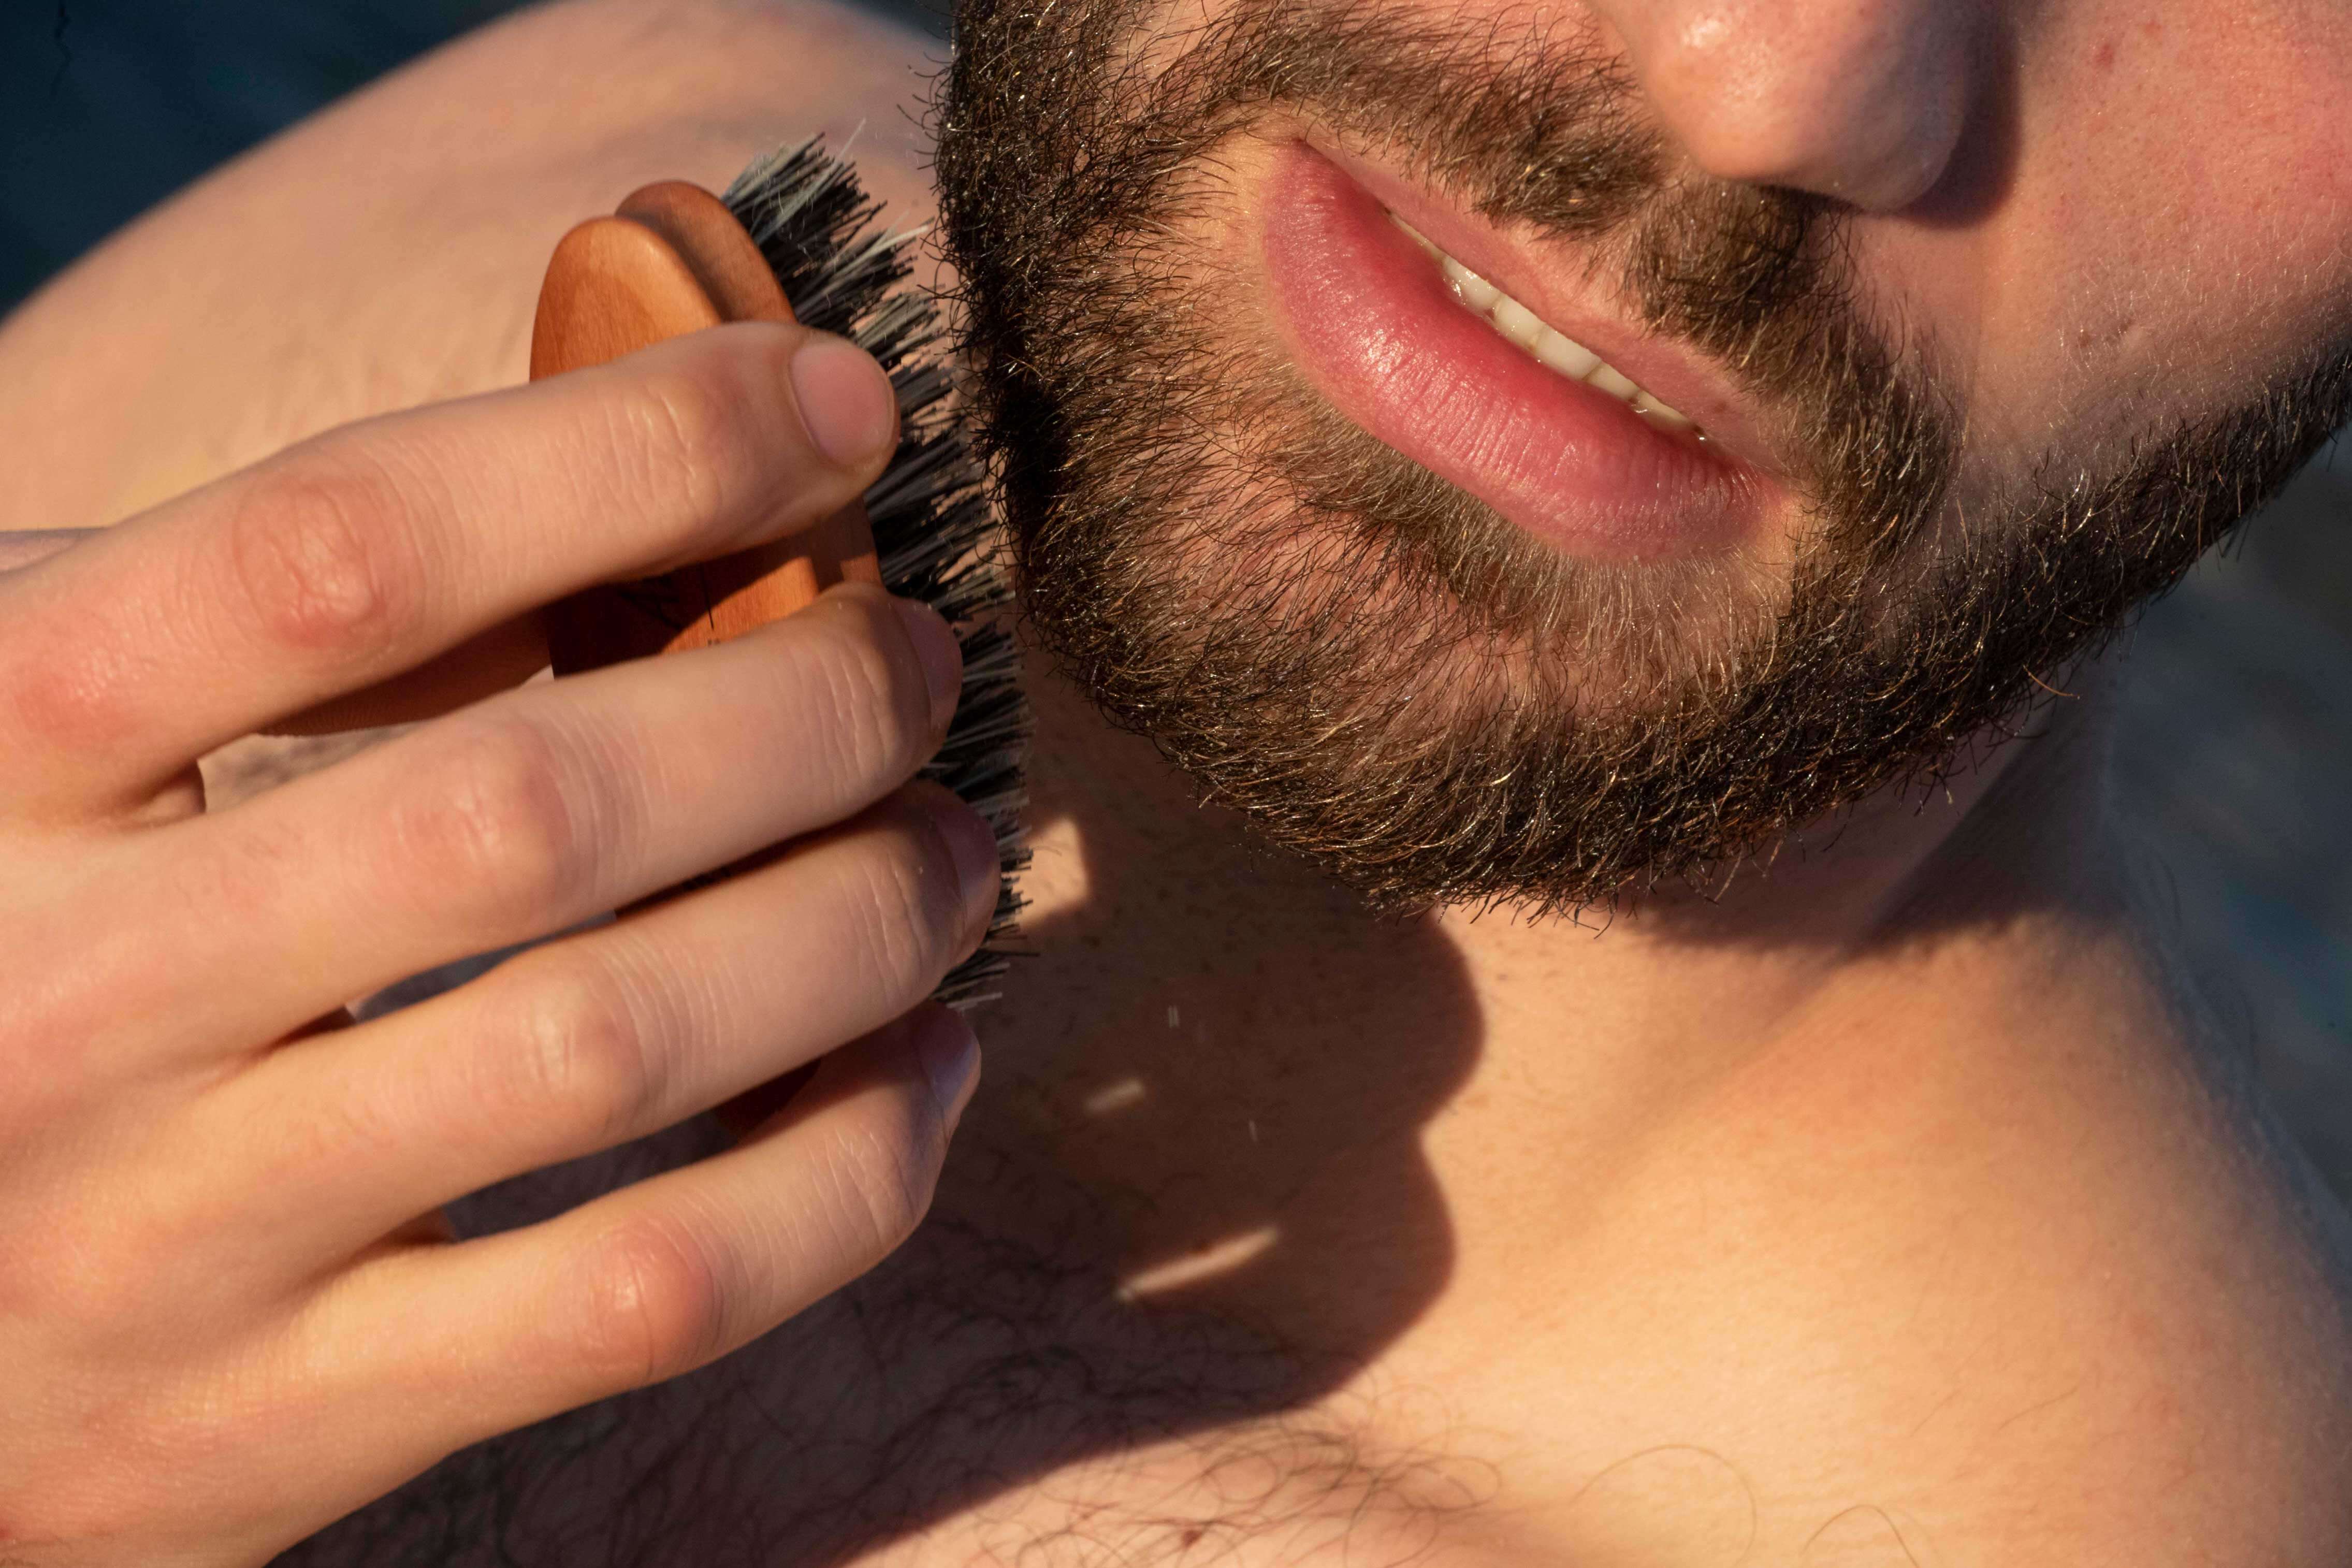 Comment utiliser la Brosse à Barbe - démonstration par un modèle barbu